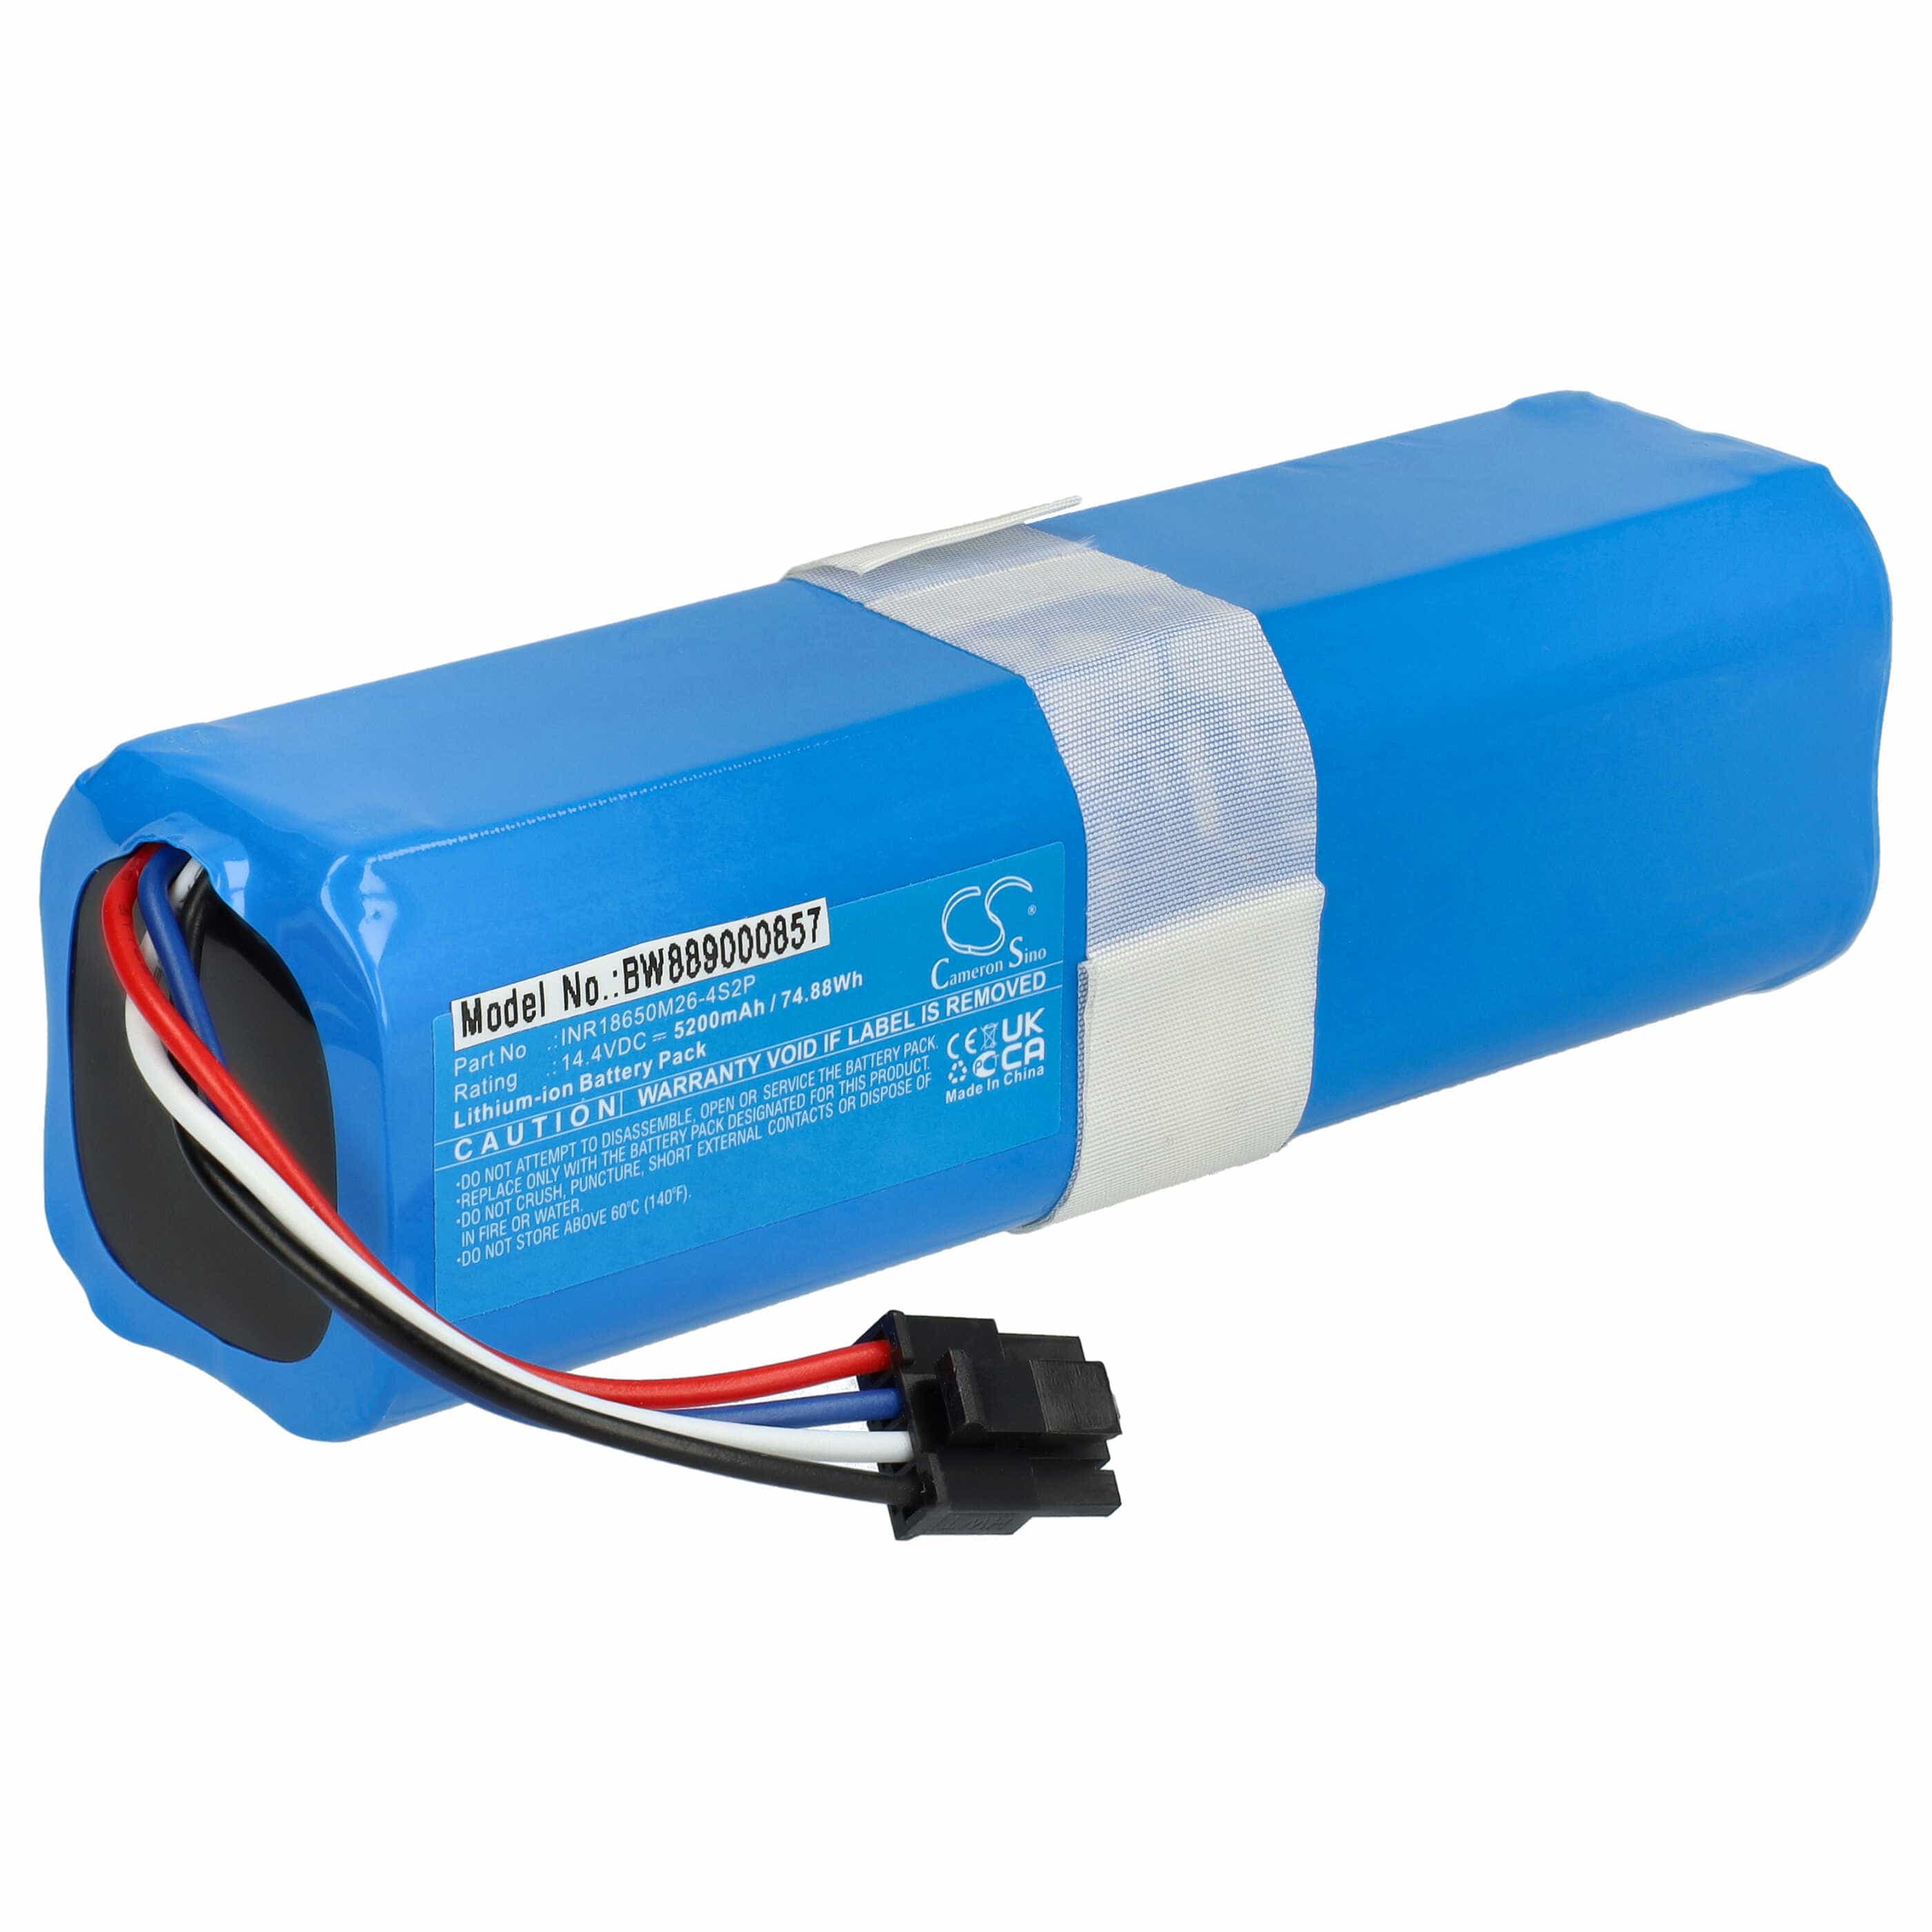 Batterie remplace 360 INR18650 M26-4S2P, D080-4S2P pour robot aspirateur - 5200mAh 14,4V Li-ion